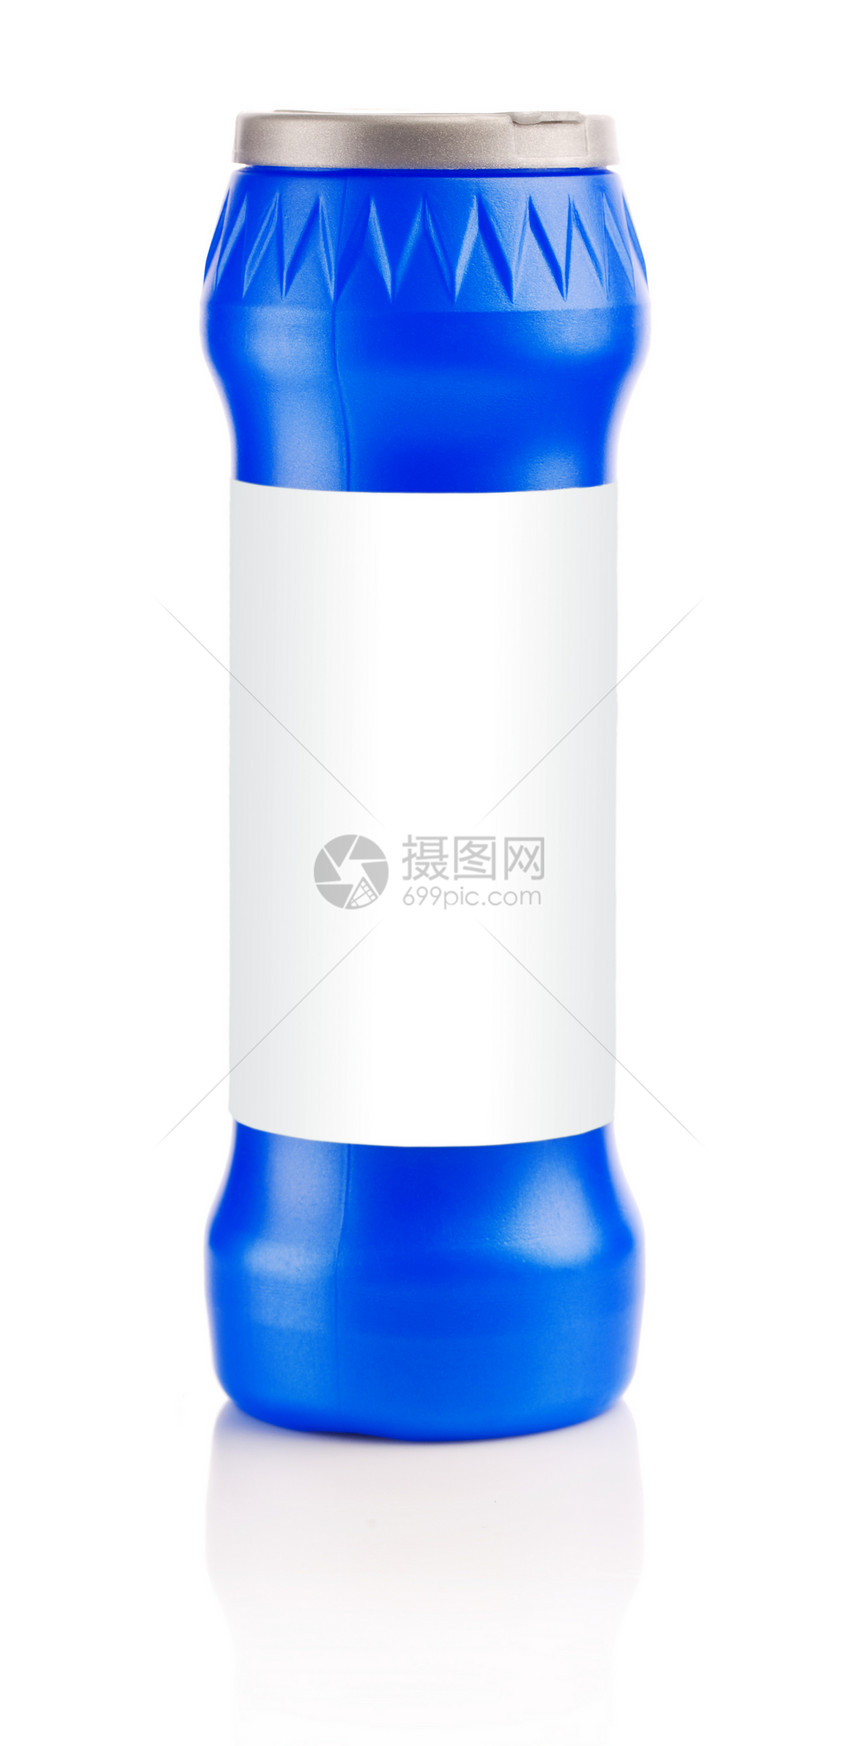 蓝蓝色塑料瓶图片